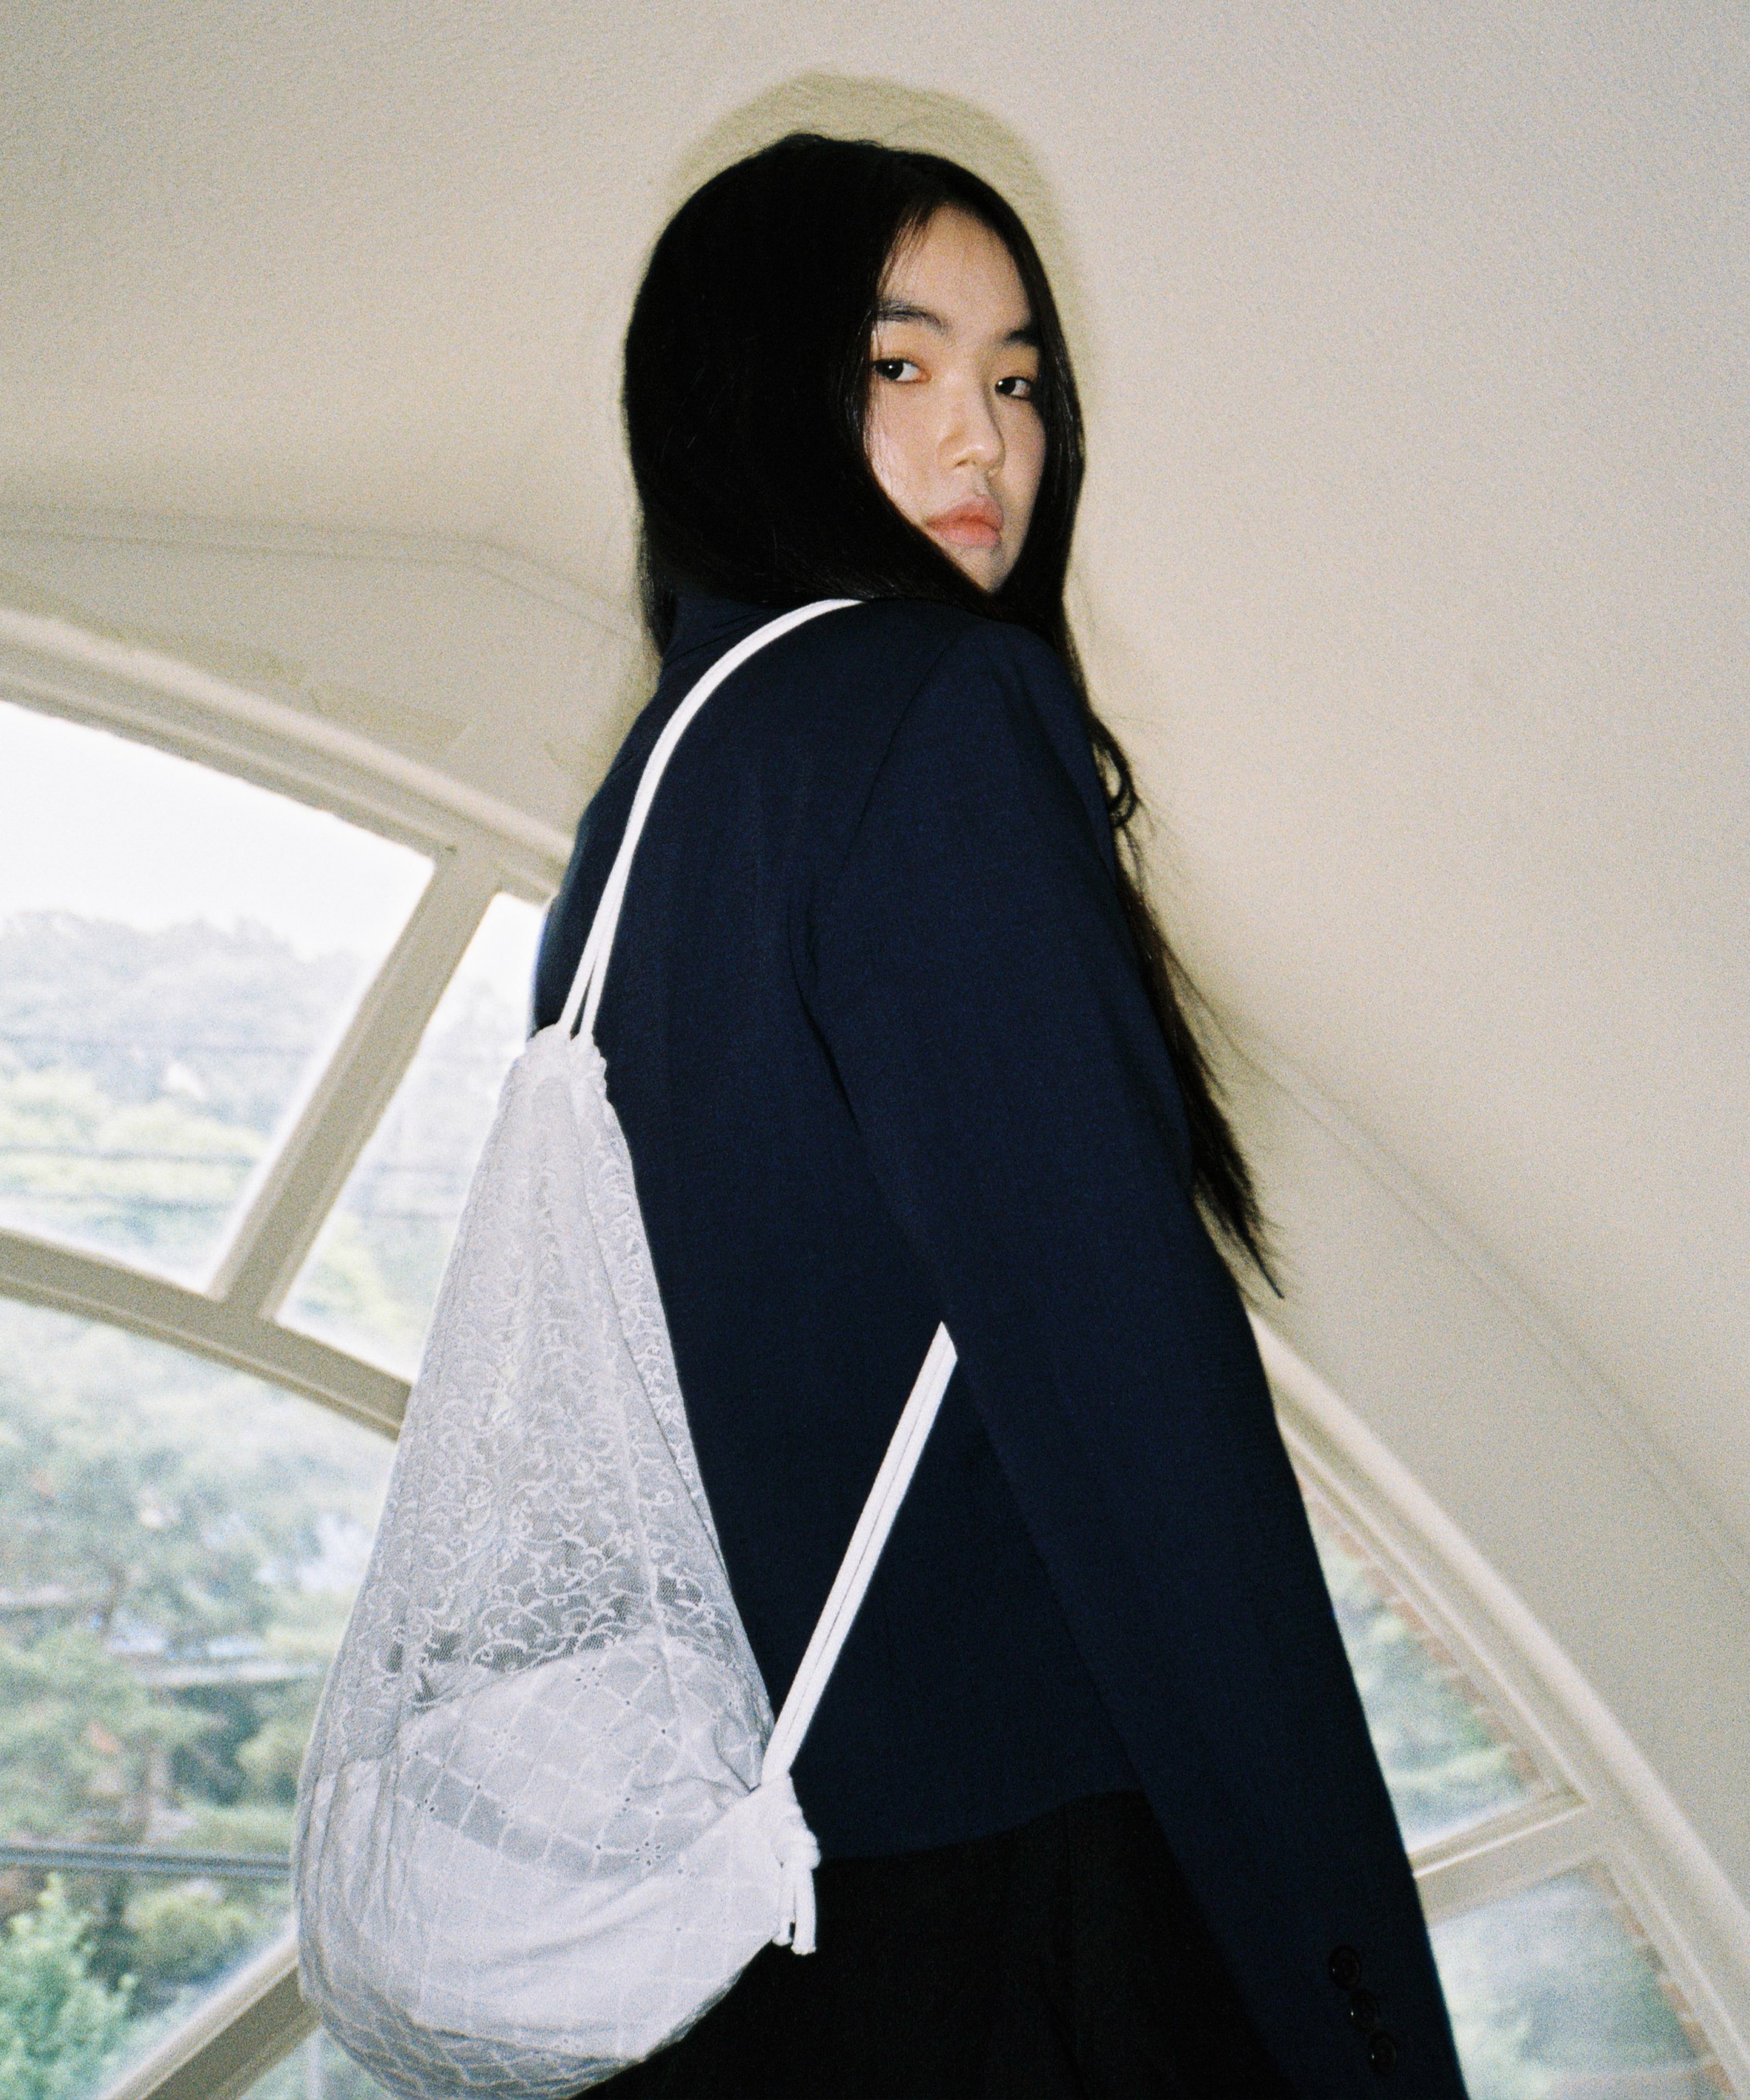 [5월 10일(금) 예약발송] Lace Drawstring Bag - White